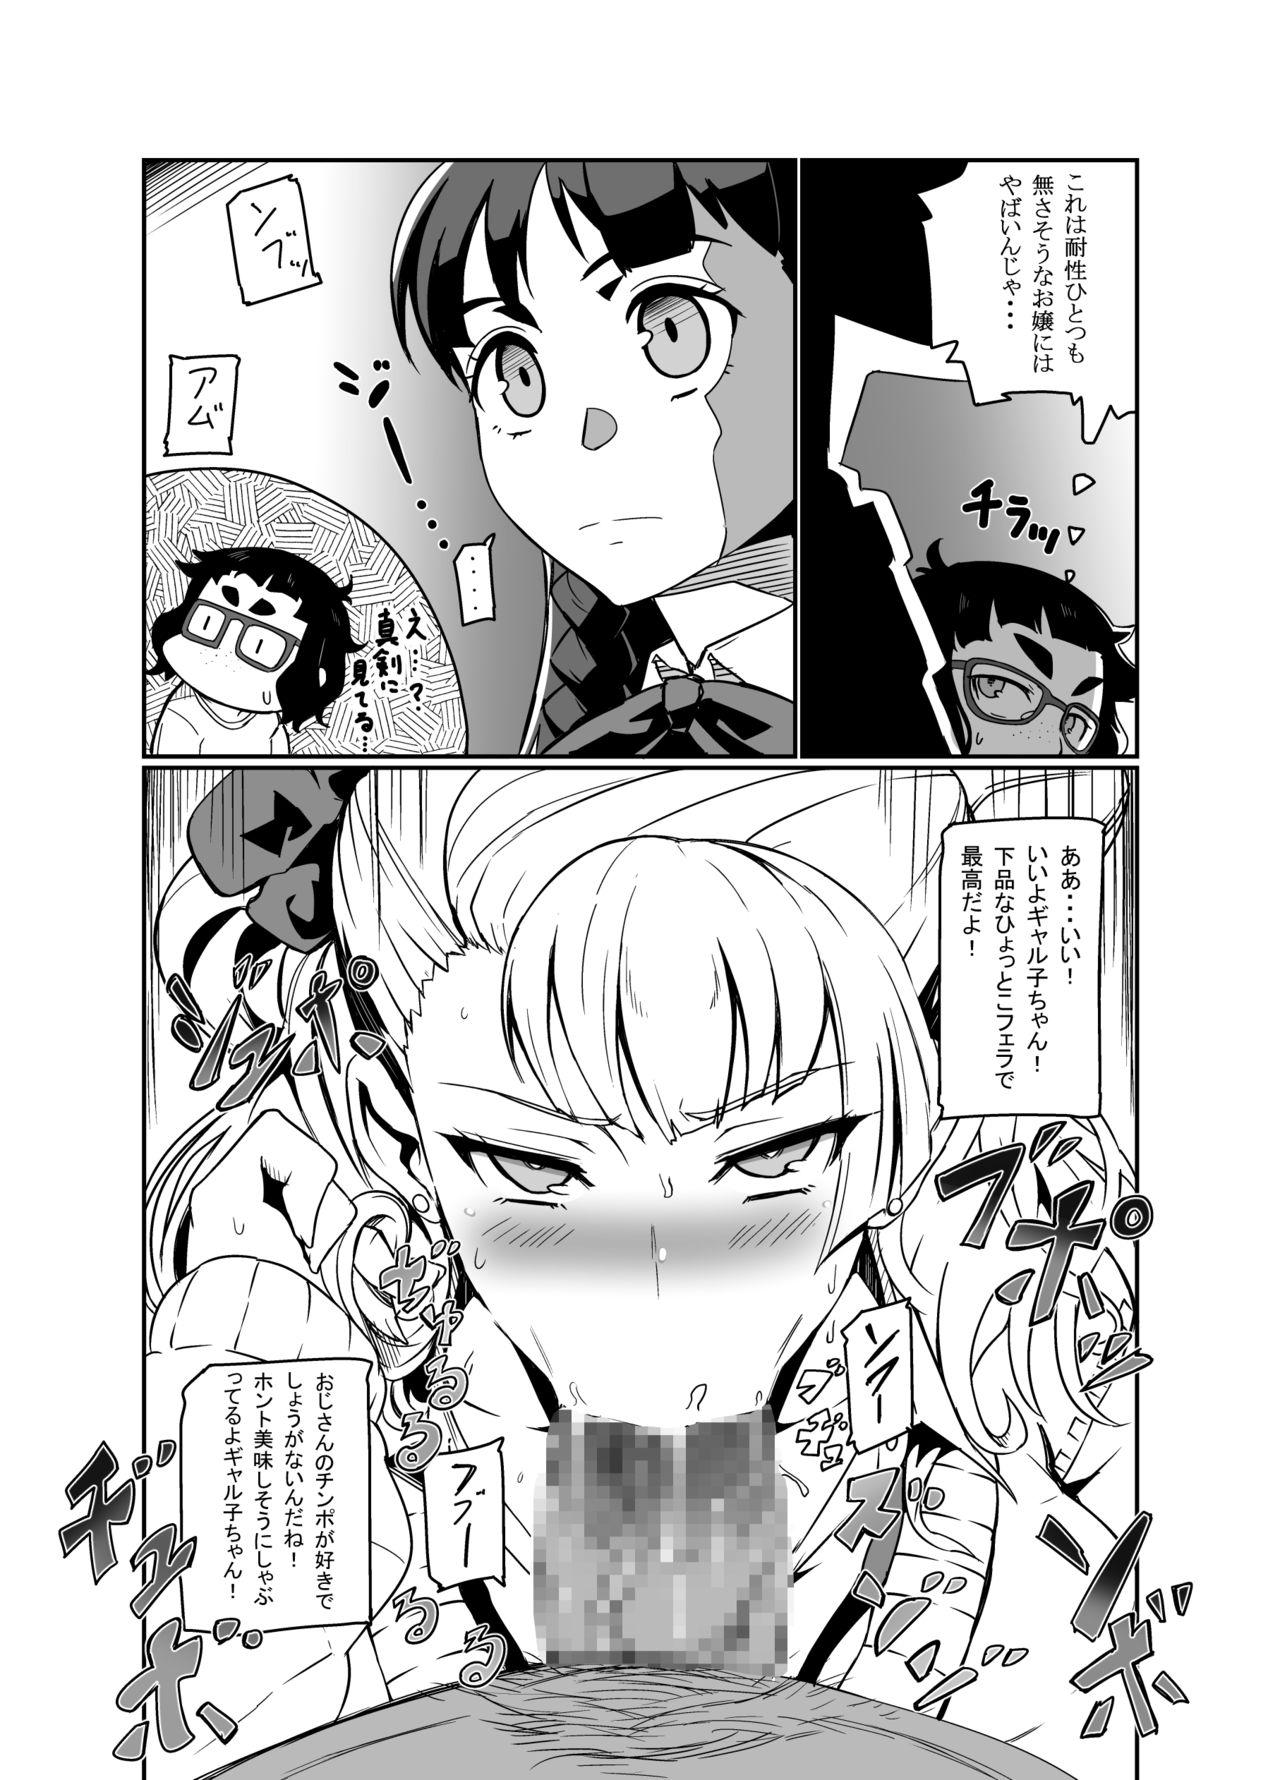 Nalgona Galko Ah! - Oshiete galko-chan Amante - Page 8